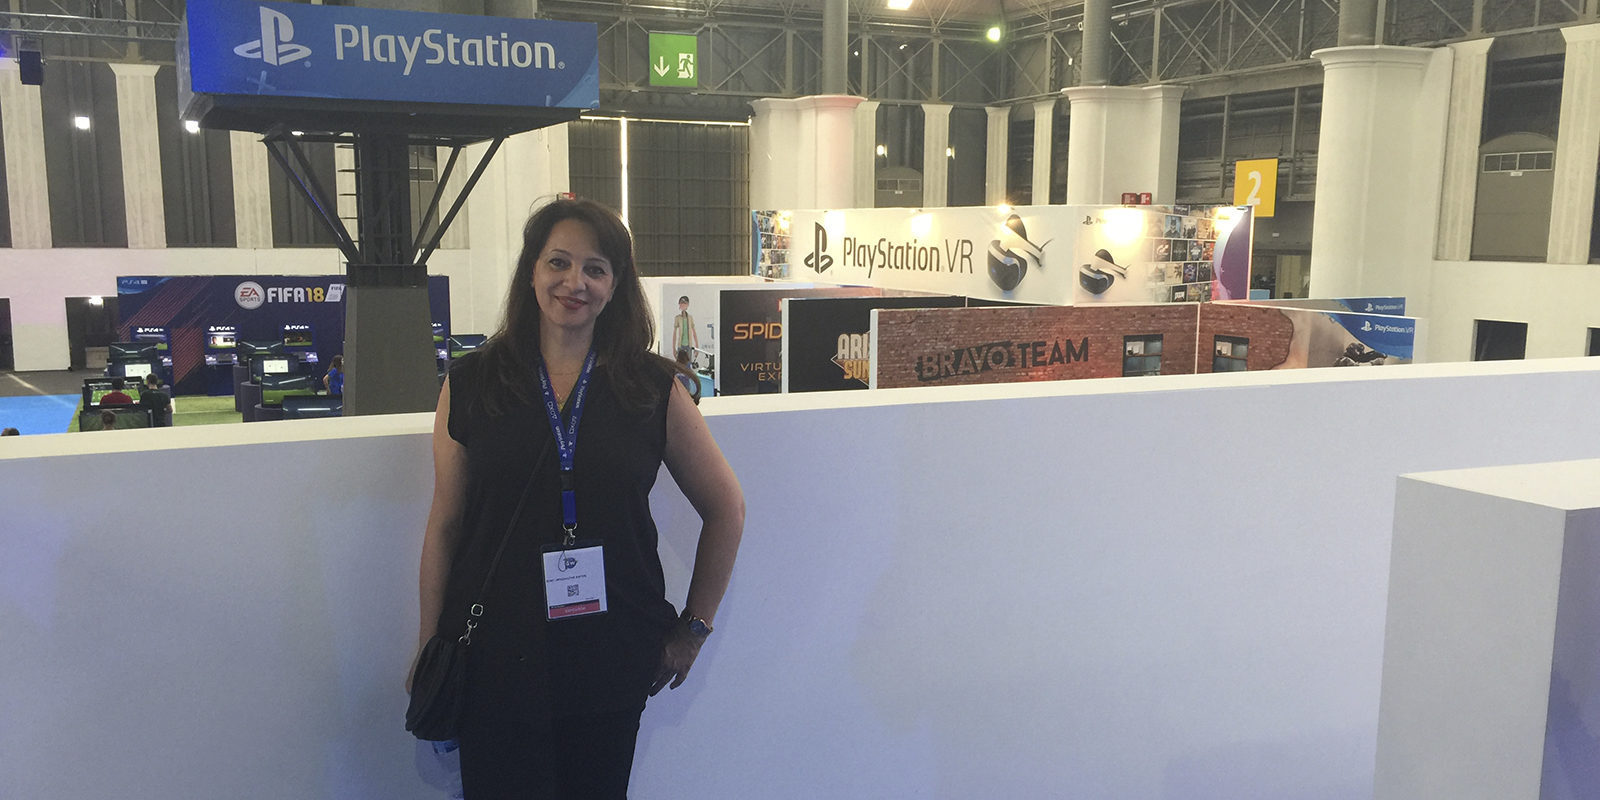 Entrevista a Cristina Infante: "PS4 todavía tiene que ver mucho contenido"